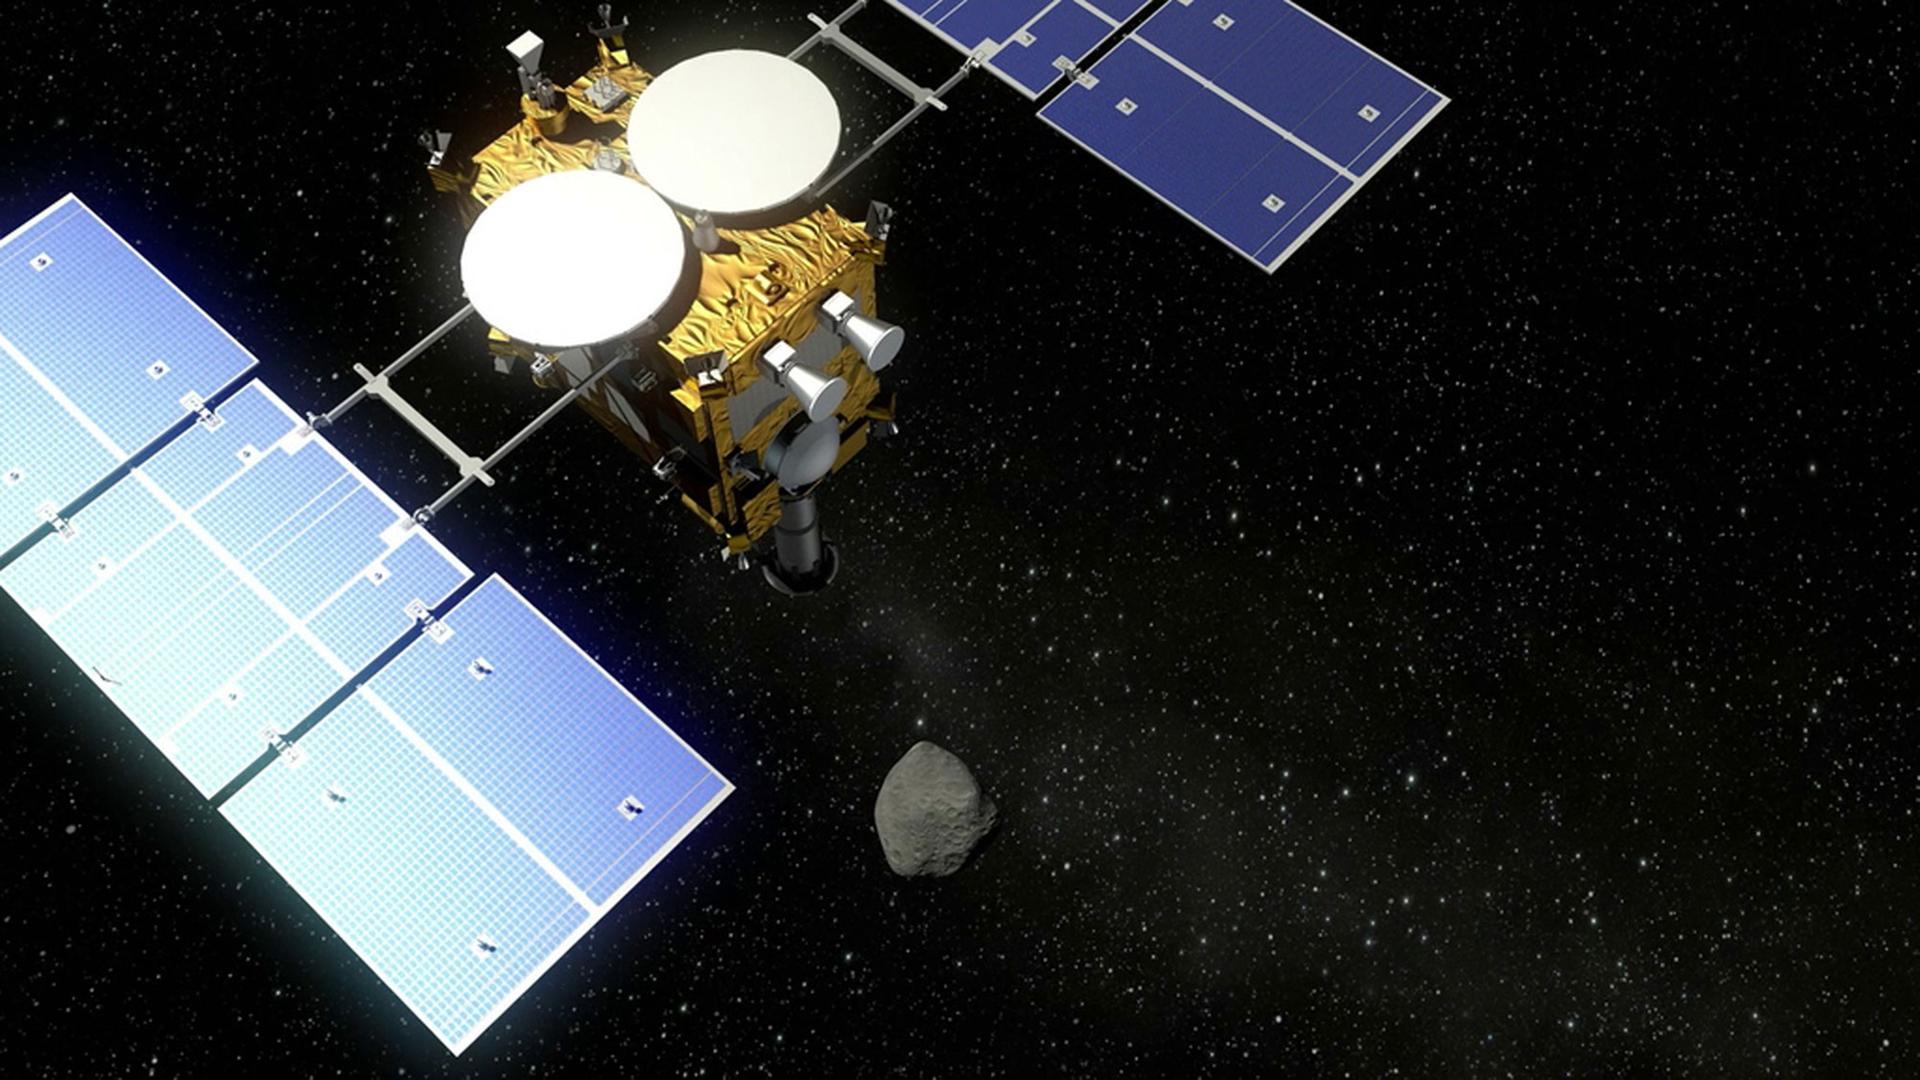 Der Asteroidenlander MASCOT fliegt mit der japanischen Raumsonde Hayabusa2 (undatierte Visualisierung) zum Asteroiden 1999 JU 3.